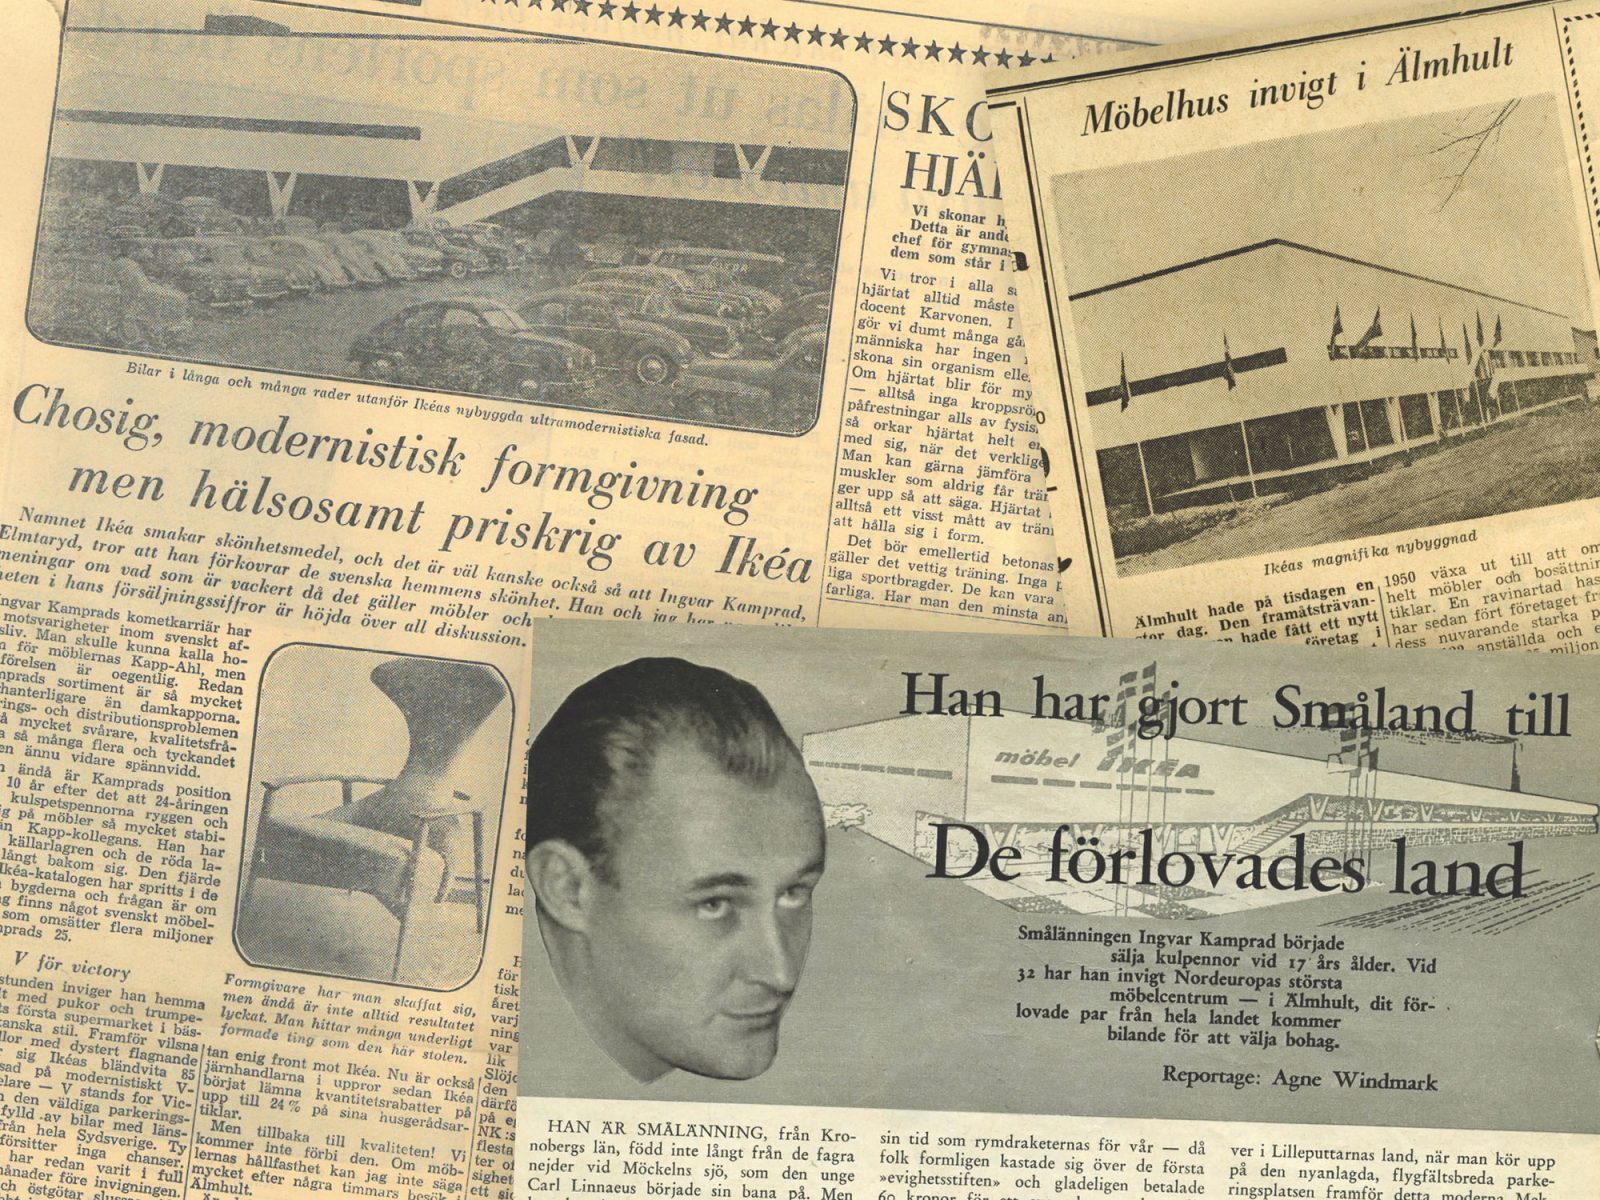 Blandade pressklipp från 1950-talstidningar med artiklar om invigningen av IKEA i Älmhult 1958.